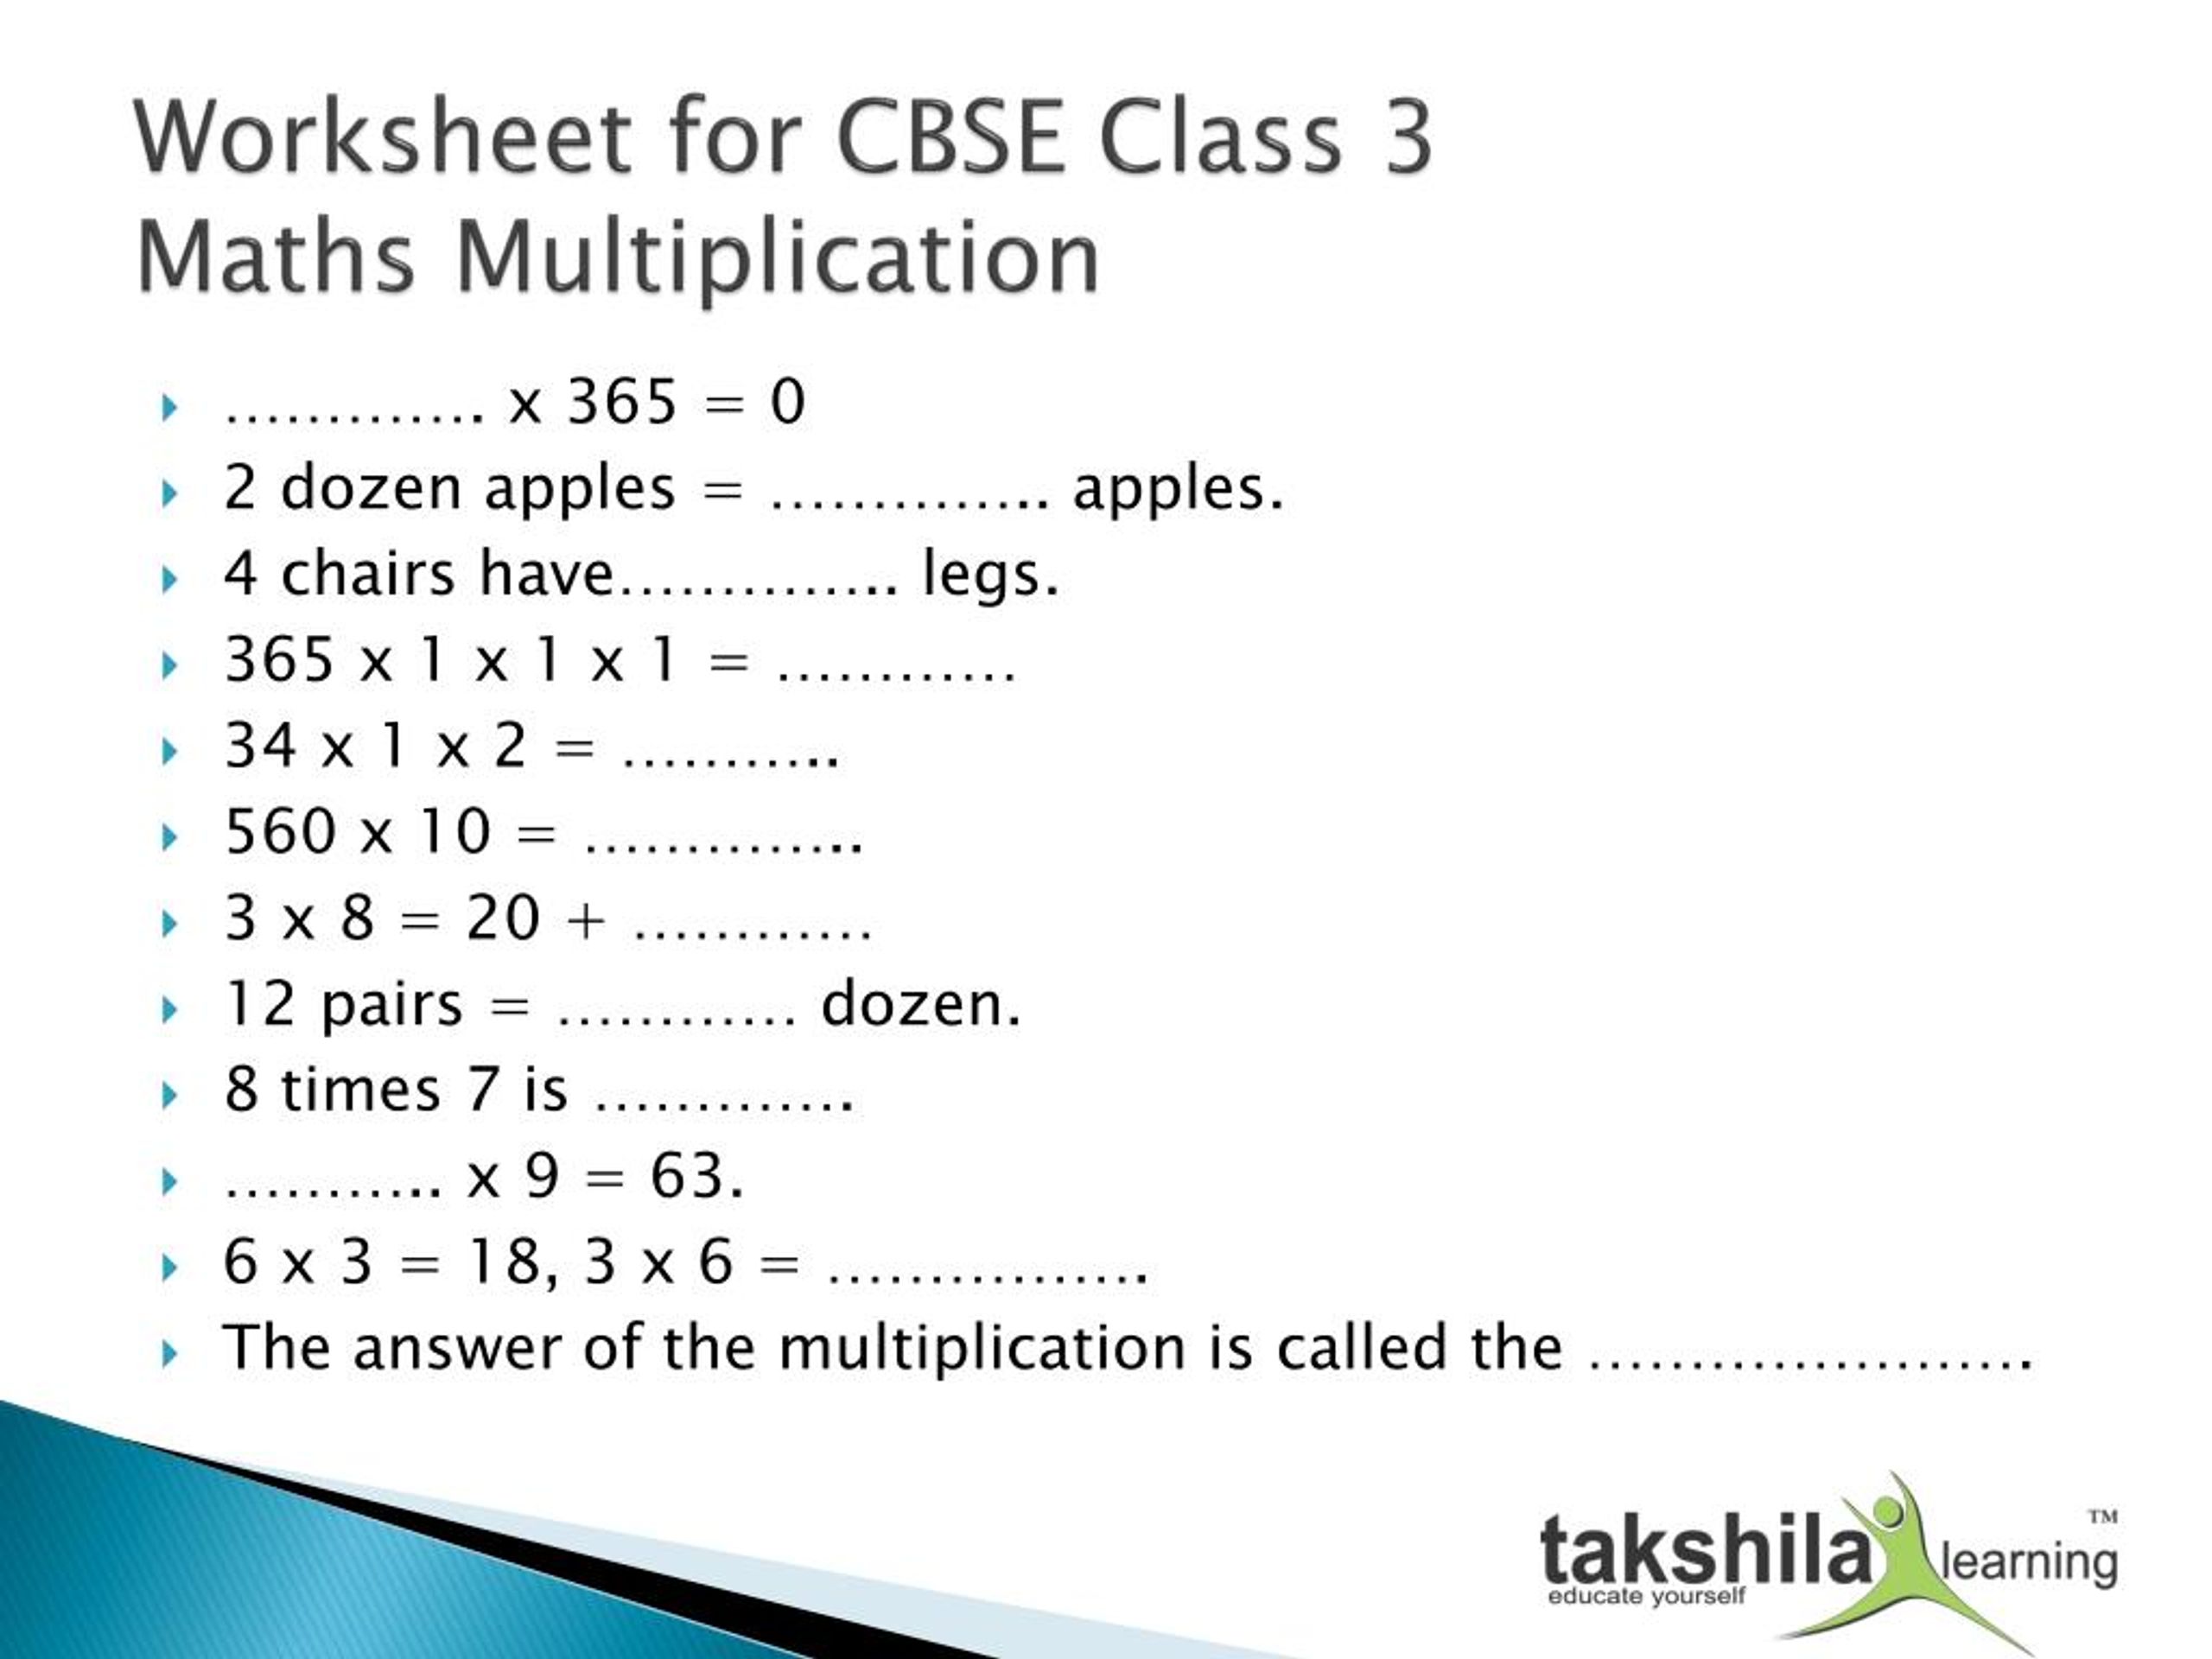 Maths Multiplication Worksheet For Class 3